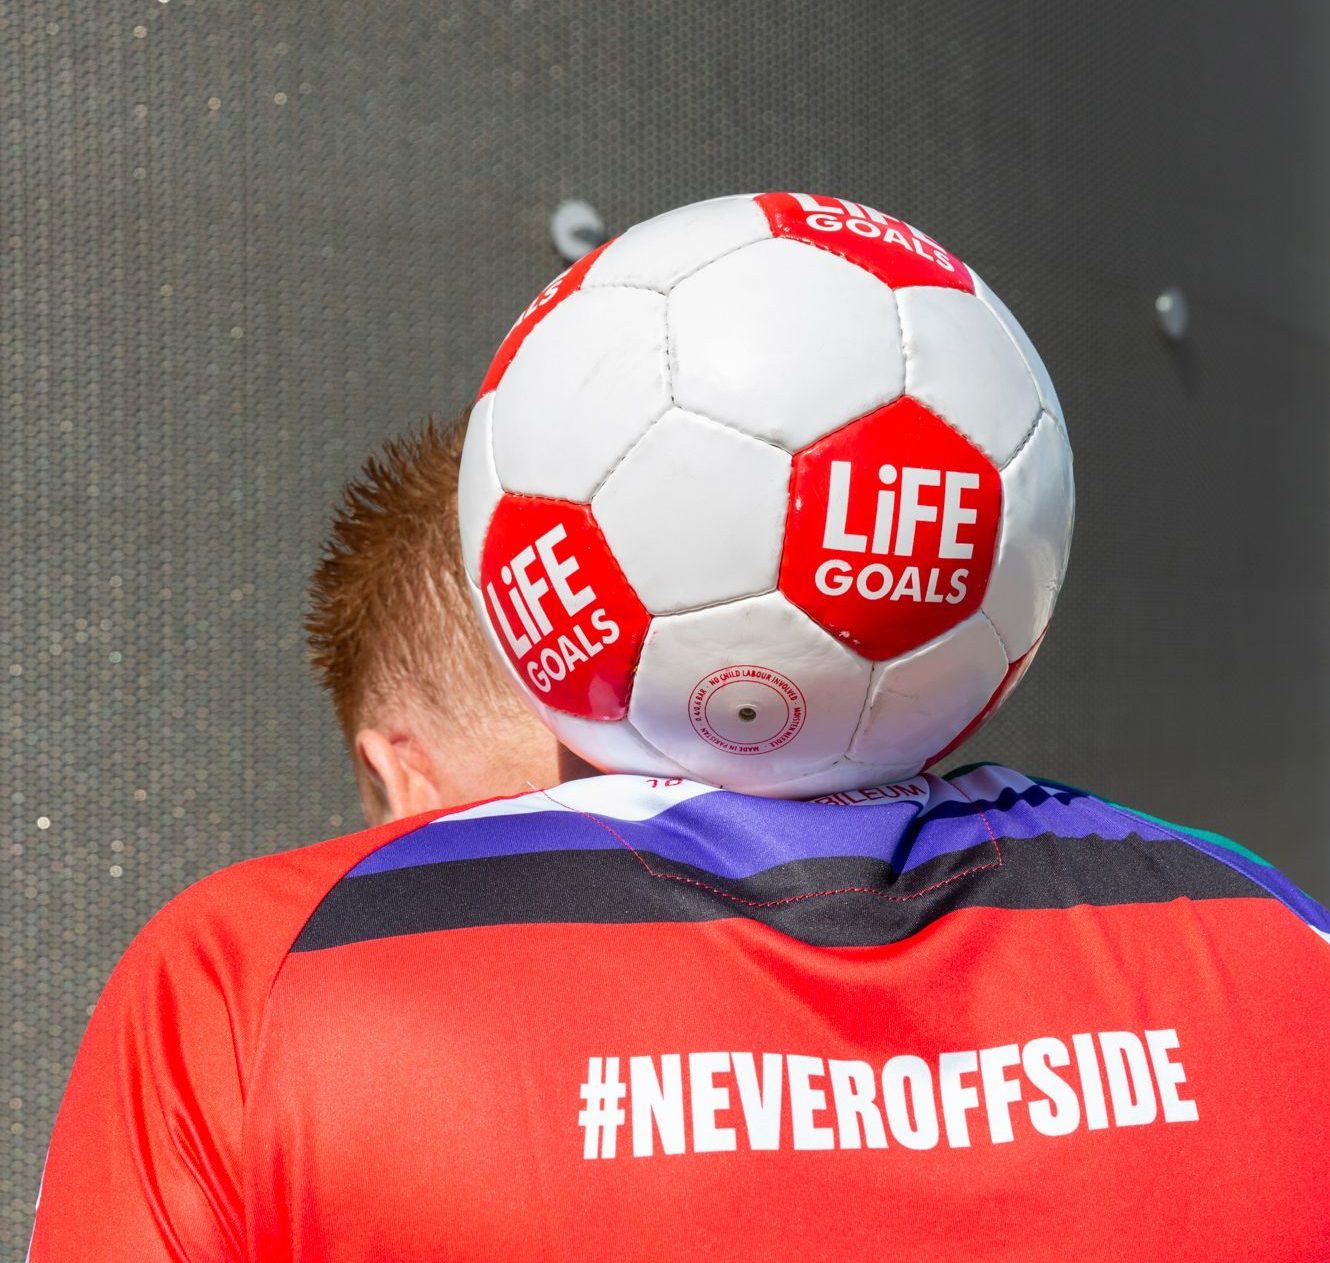 Bijeenkomst 29 november: Life Goals stelt actiebudget beschikbaar voor sociale sportinitiatieven